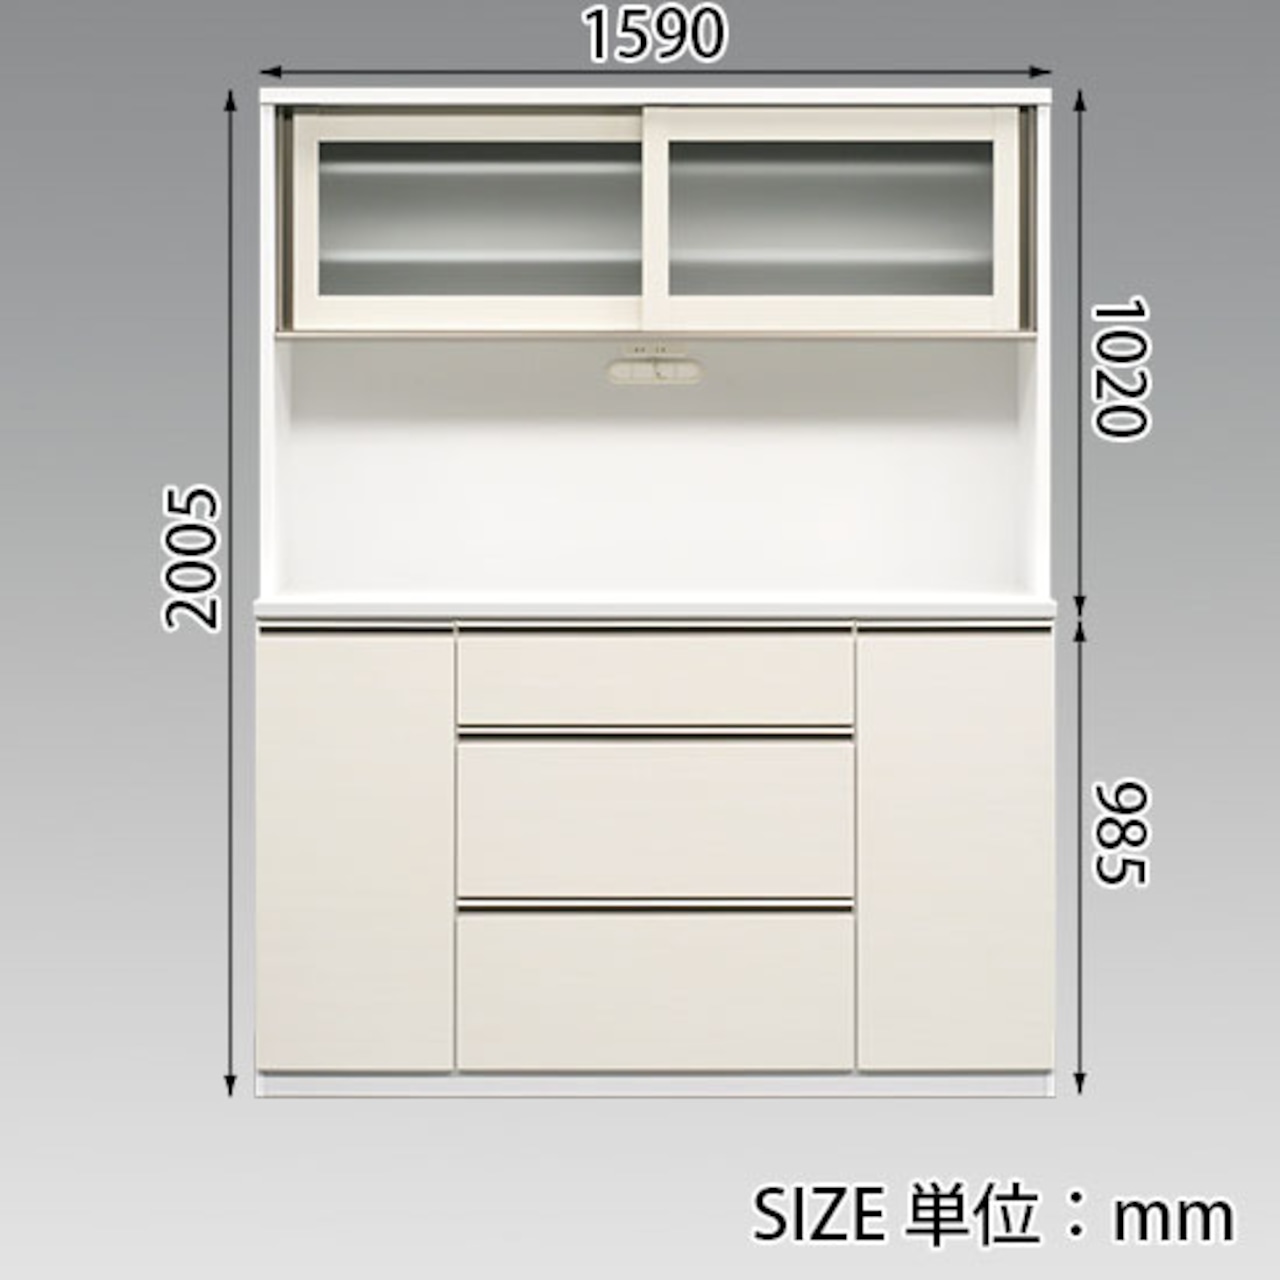 【幅160】キッチンボード 食器棚 収納 レンジ台(全2色)